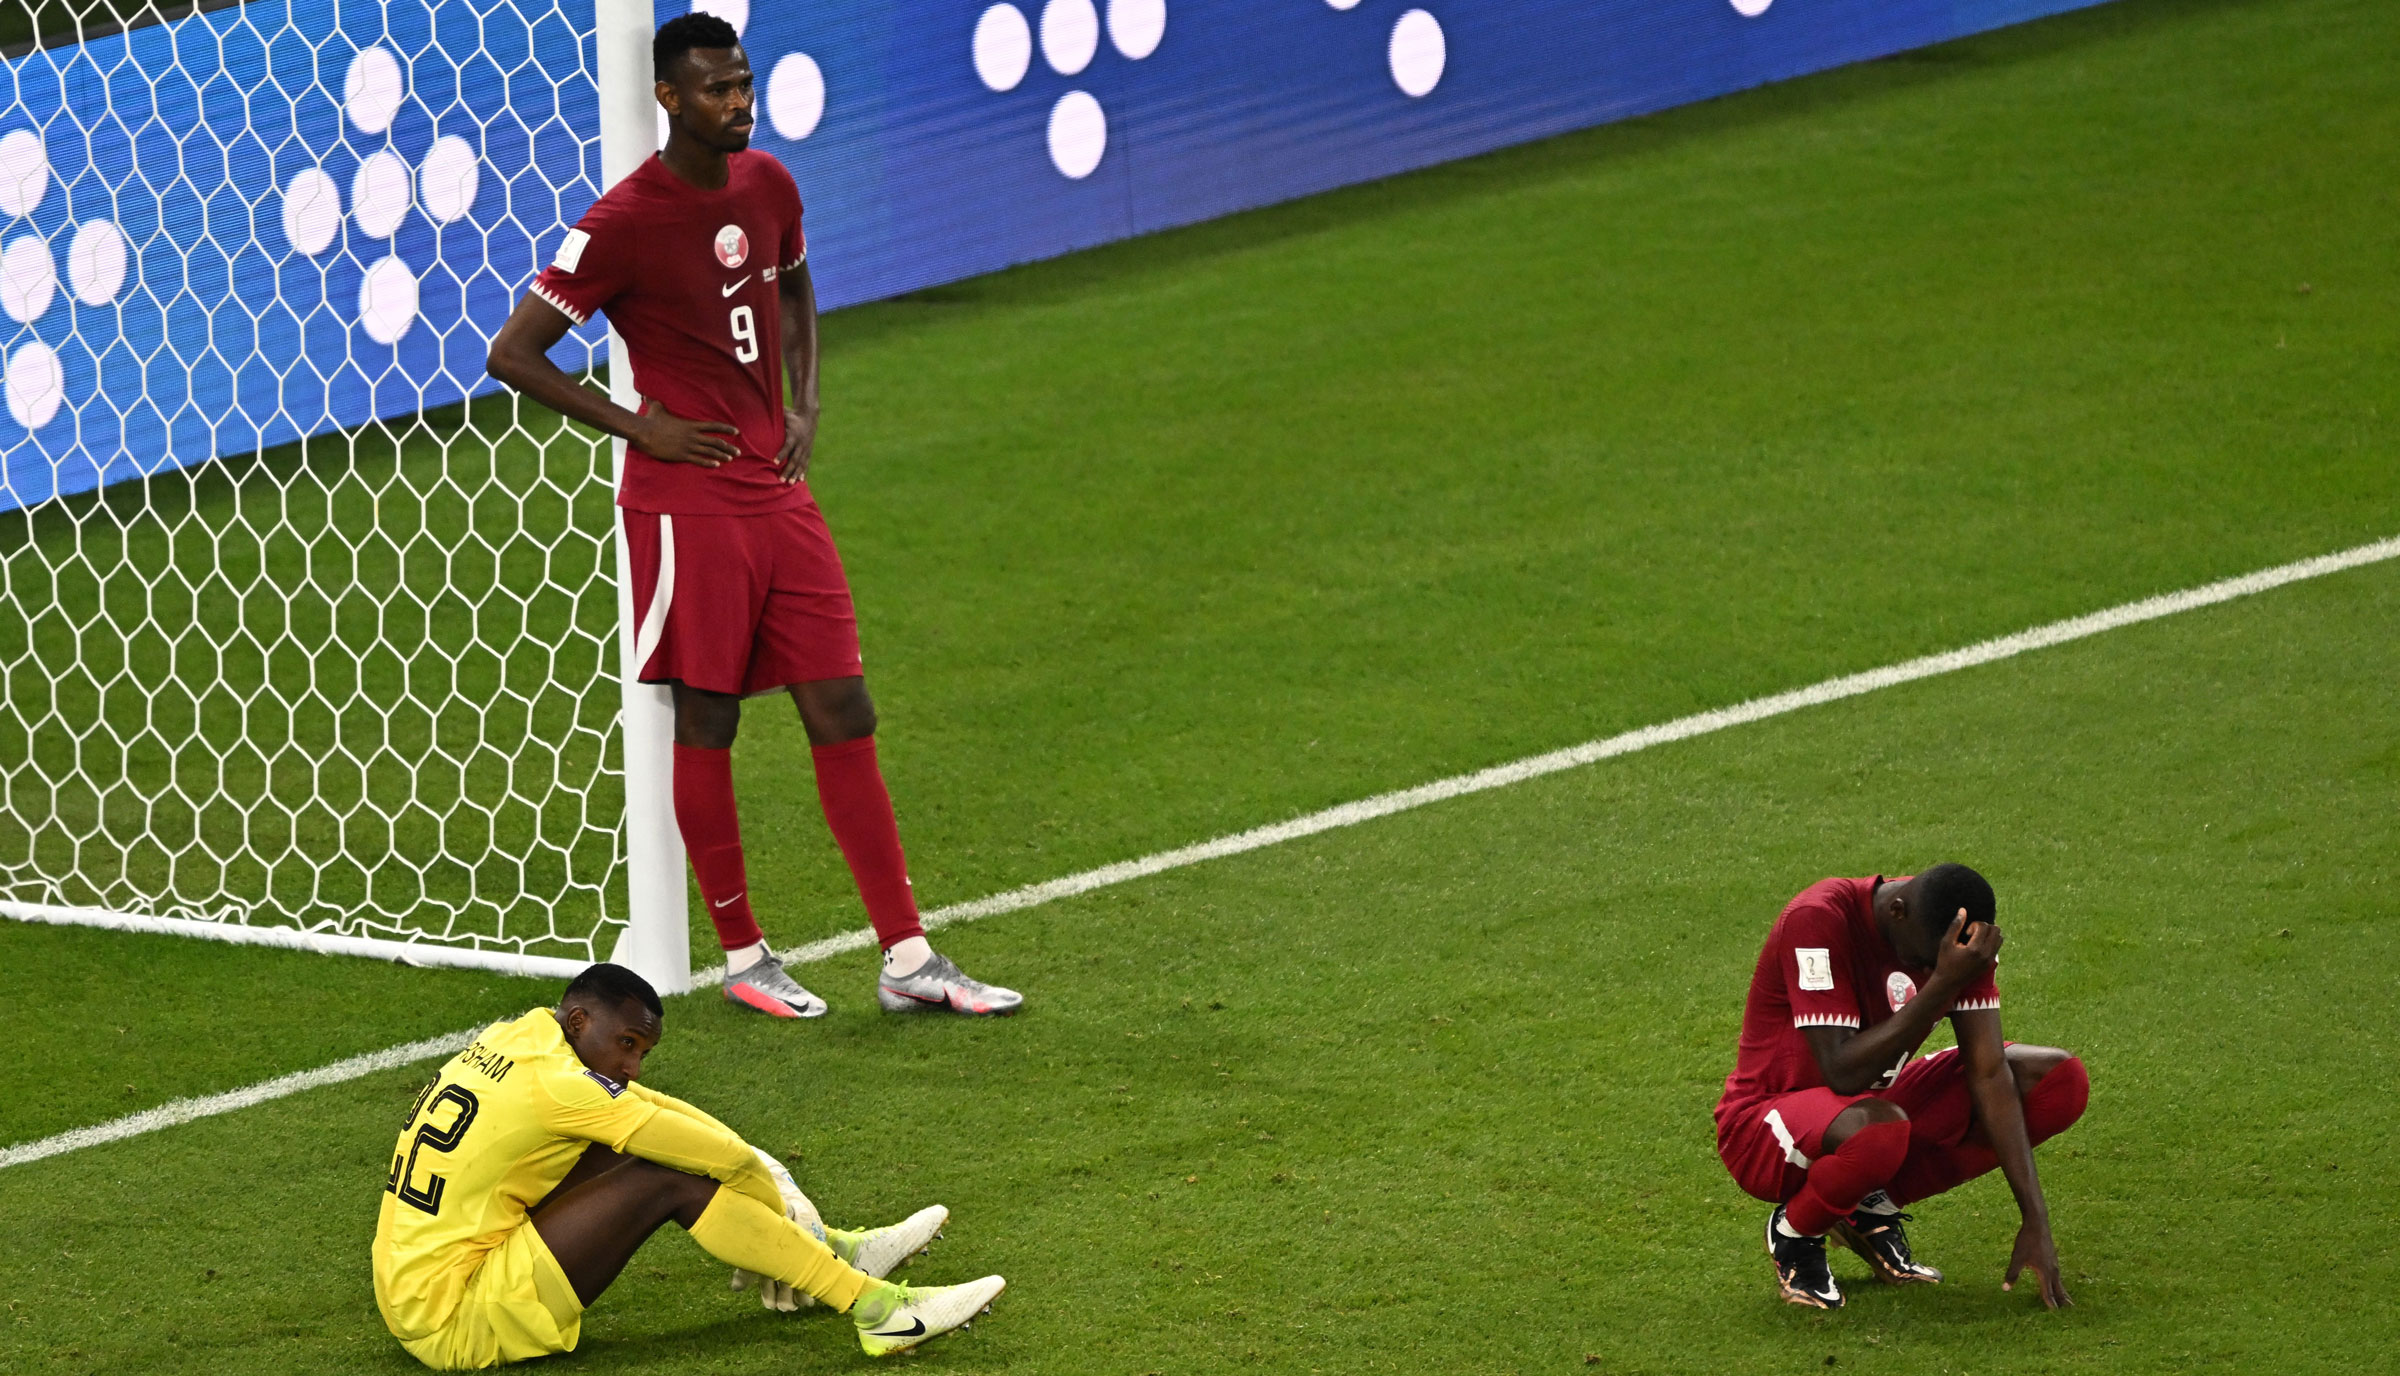 Chia sẻ về trận thua của đội tuyển Qatar và Senagal với tỷ số 3-1